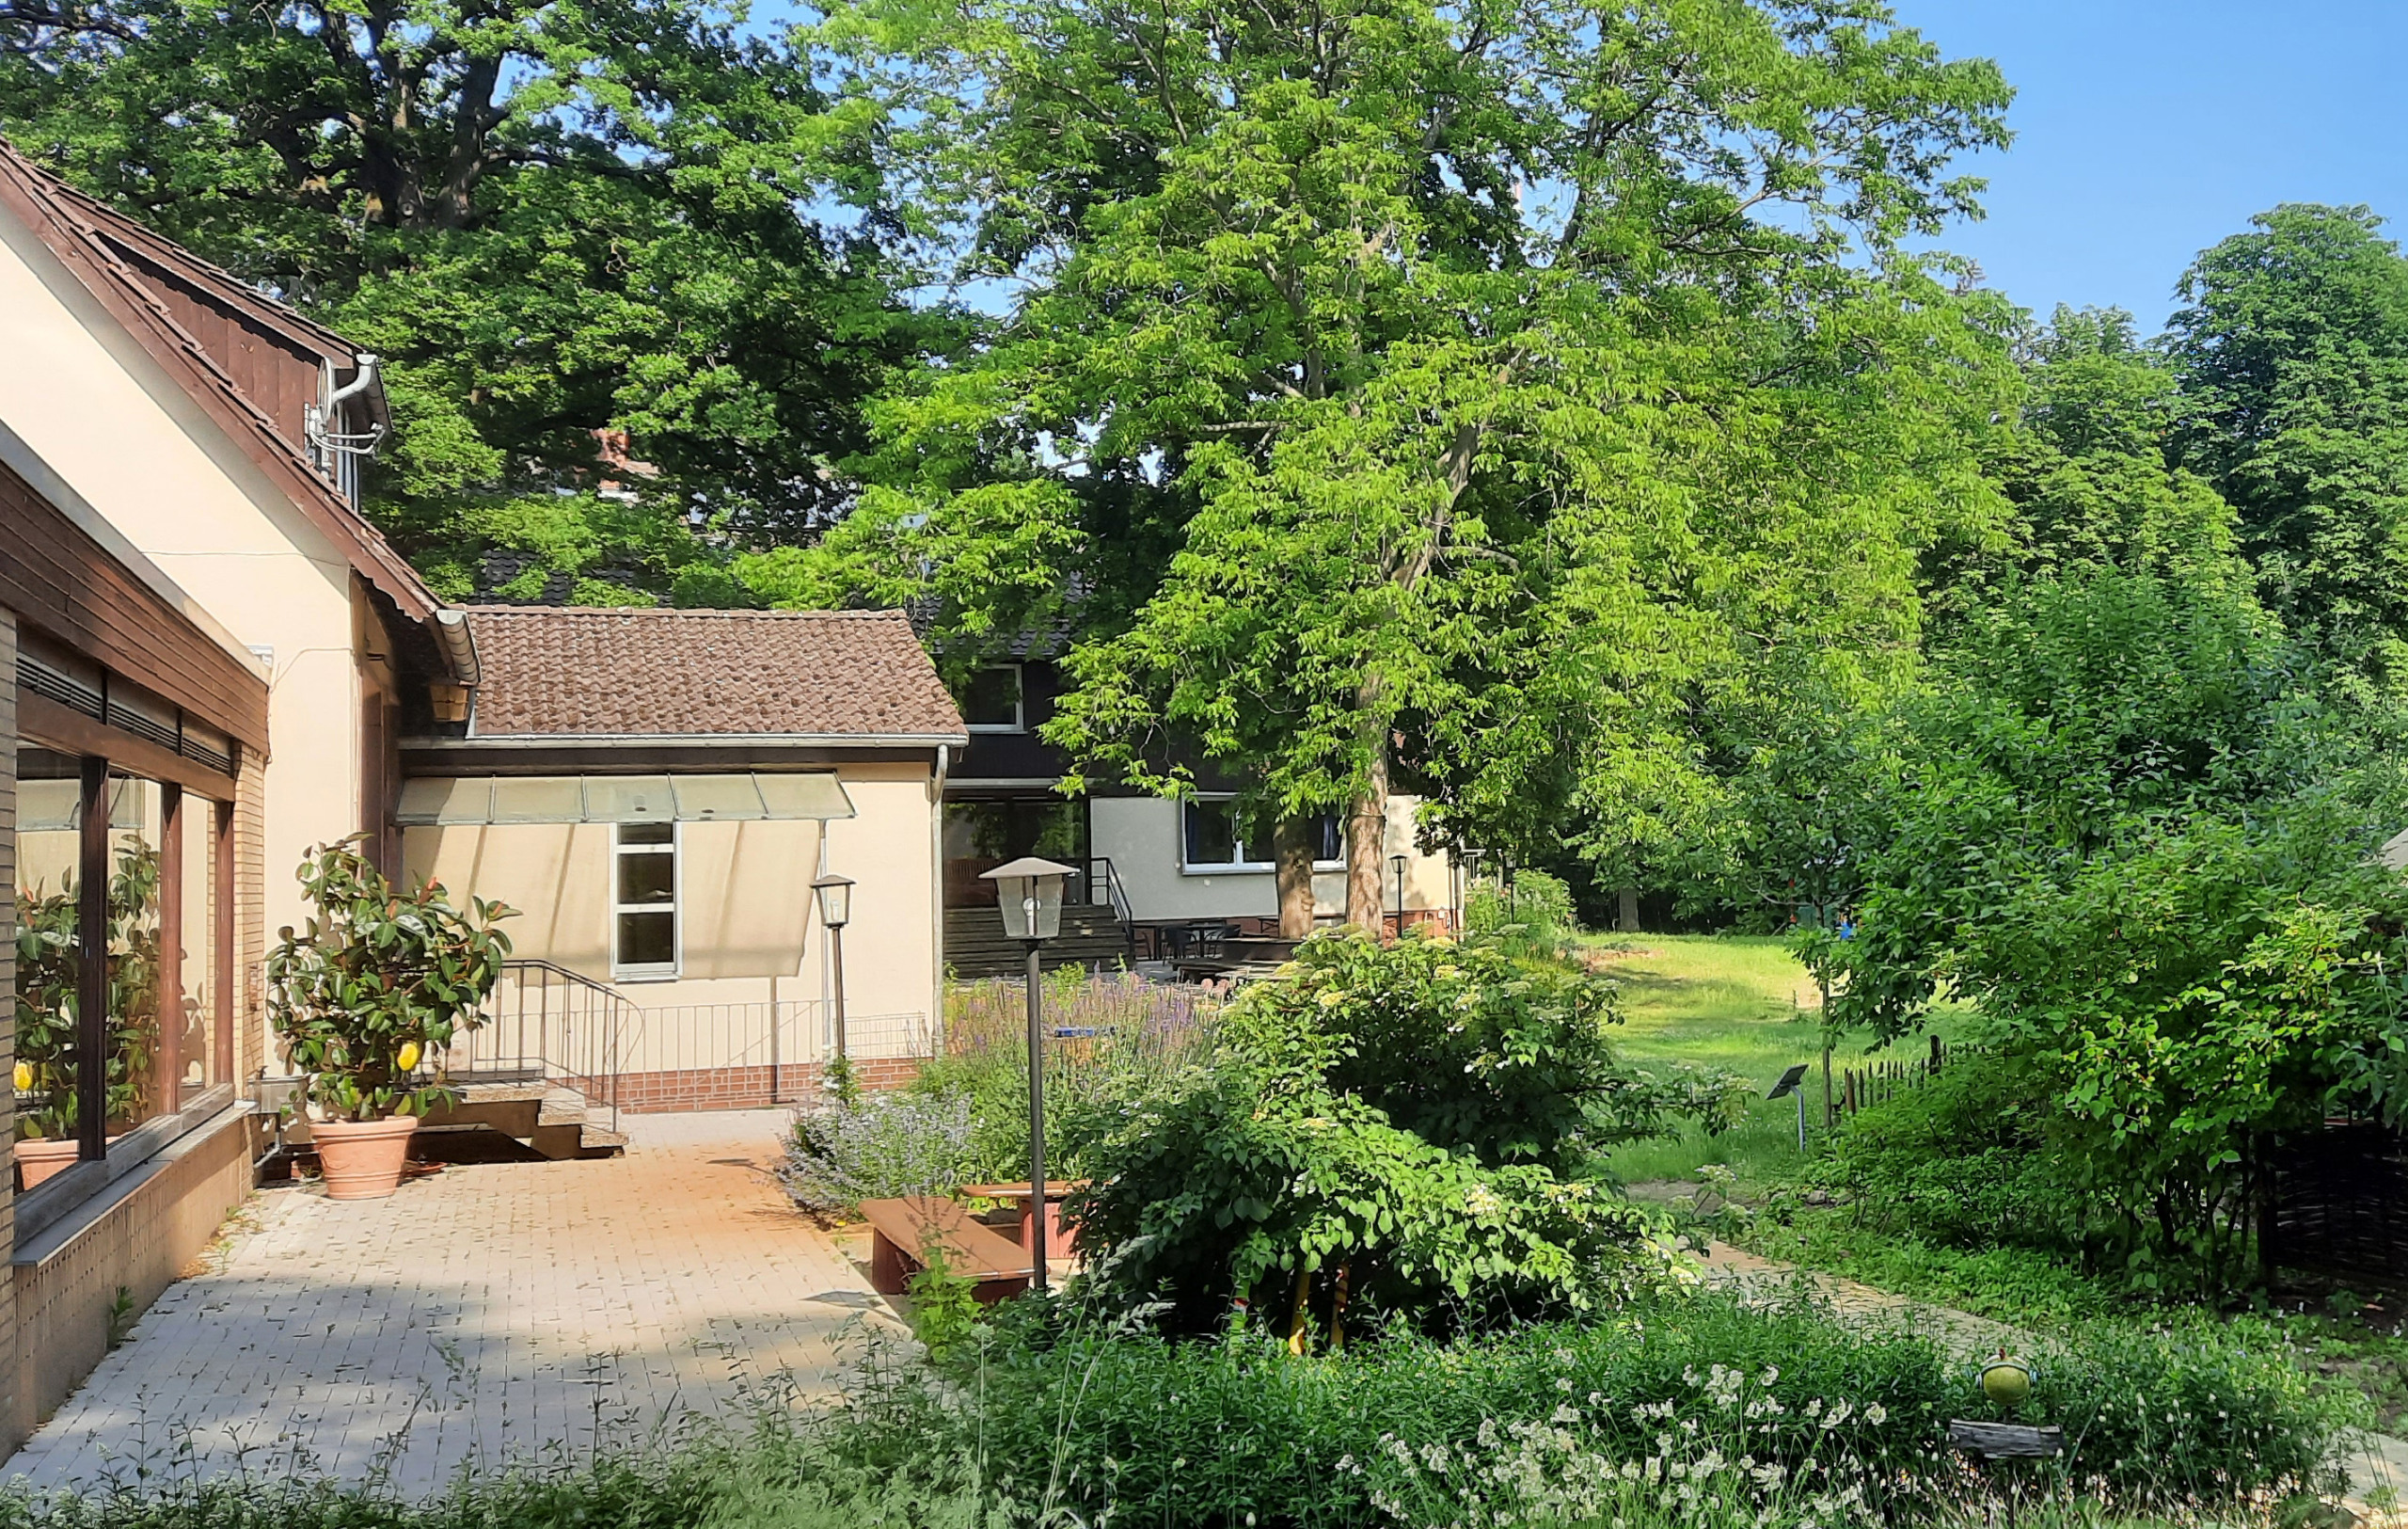 Zu sehen ist ein Teil des Naturfreundehauses mit Veranda, das umgeben ist von duftigen Wiesen, Büschen und Bäumen